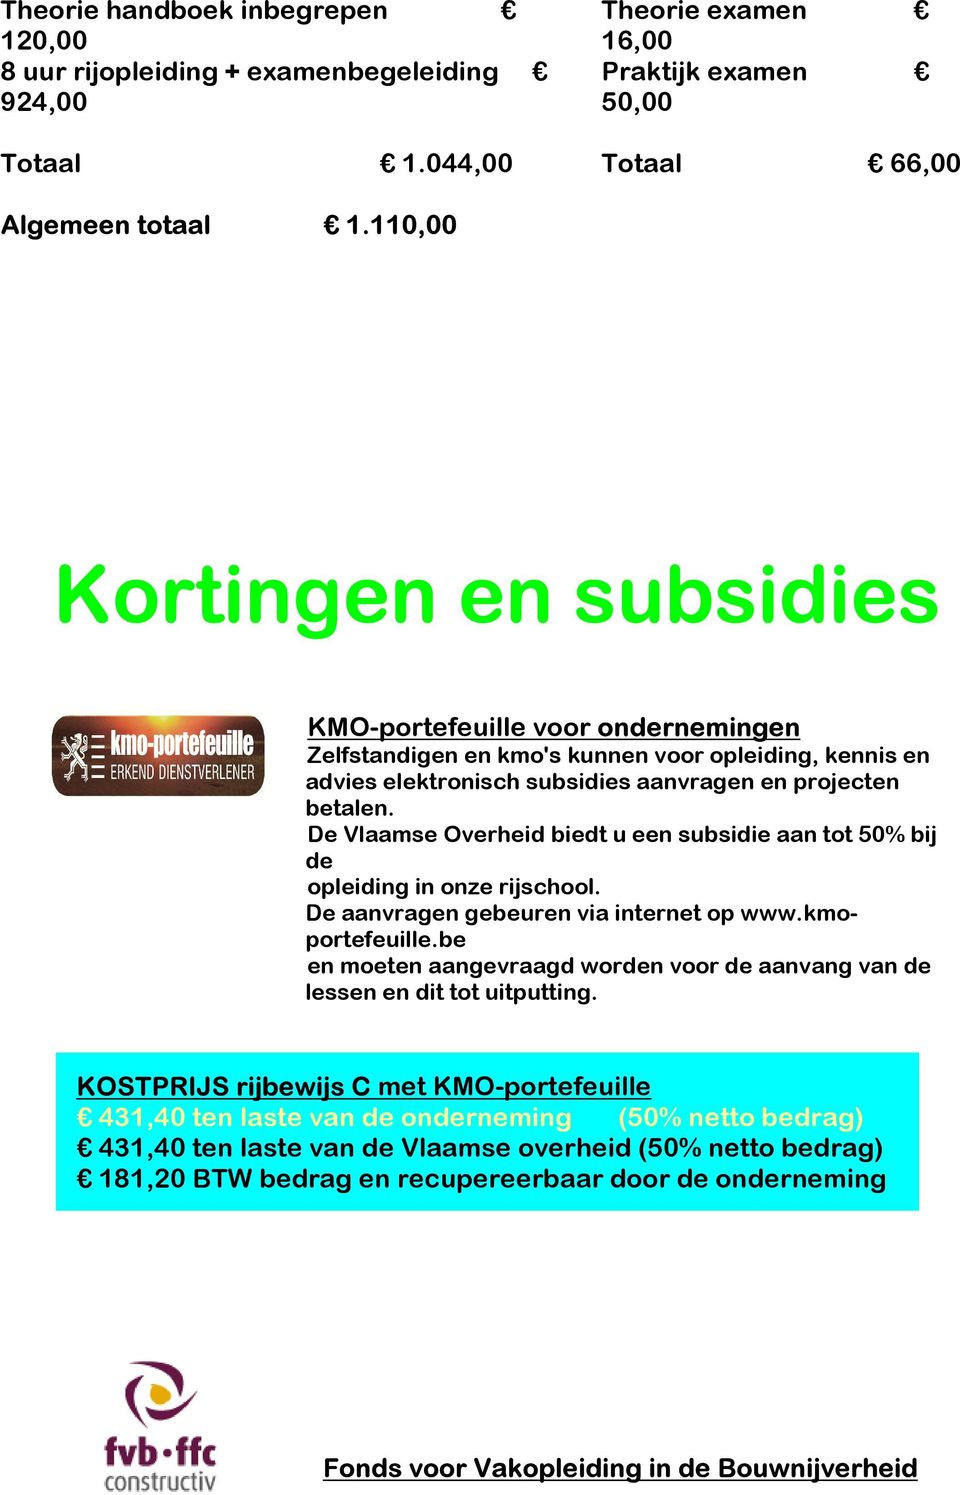 De Vlaamse Overheid biedt u een subsidie aan tot 50% bij de opleiding in onze rijschool. De aanvragen gebeuren via internet op www.kmoportefeuille.